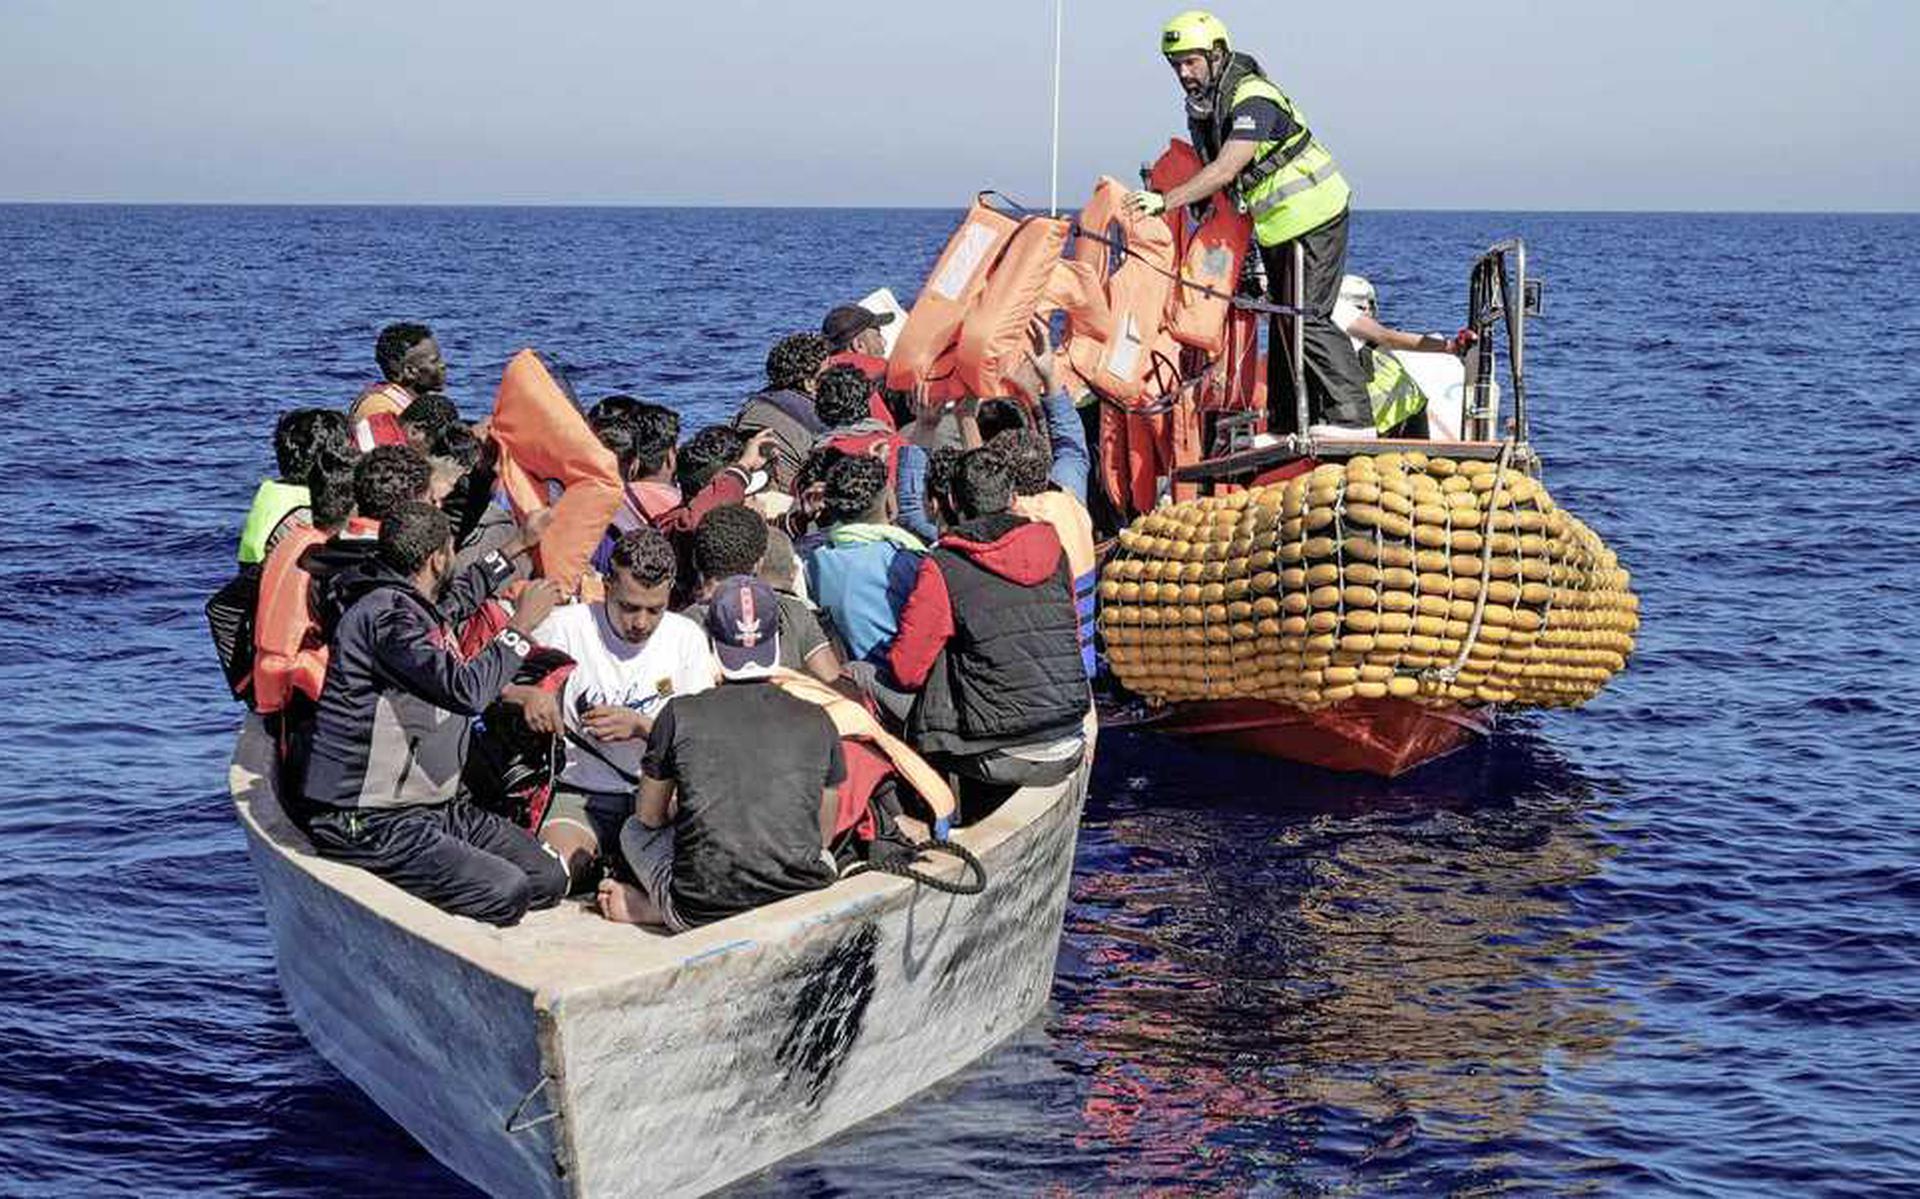 Il primo ministro italiano Meloni chiude i porti alle navi migranti